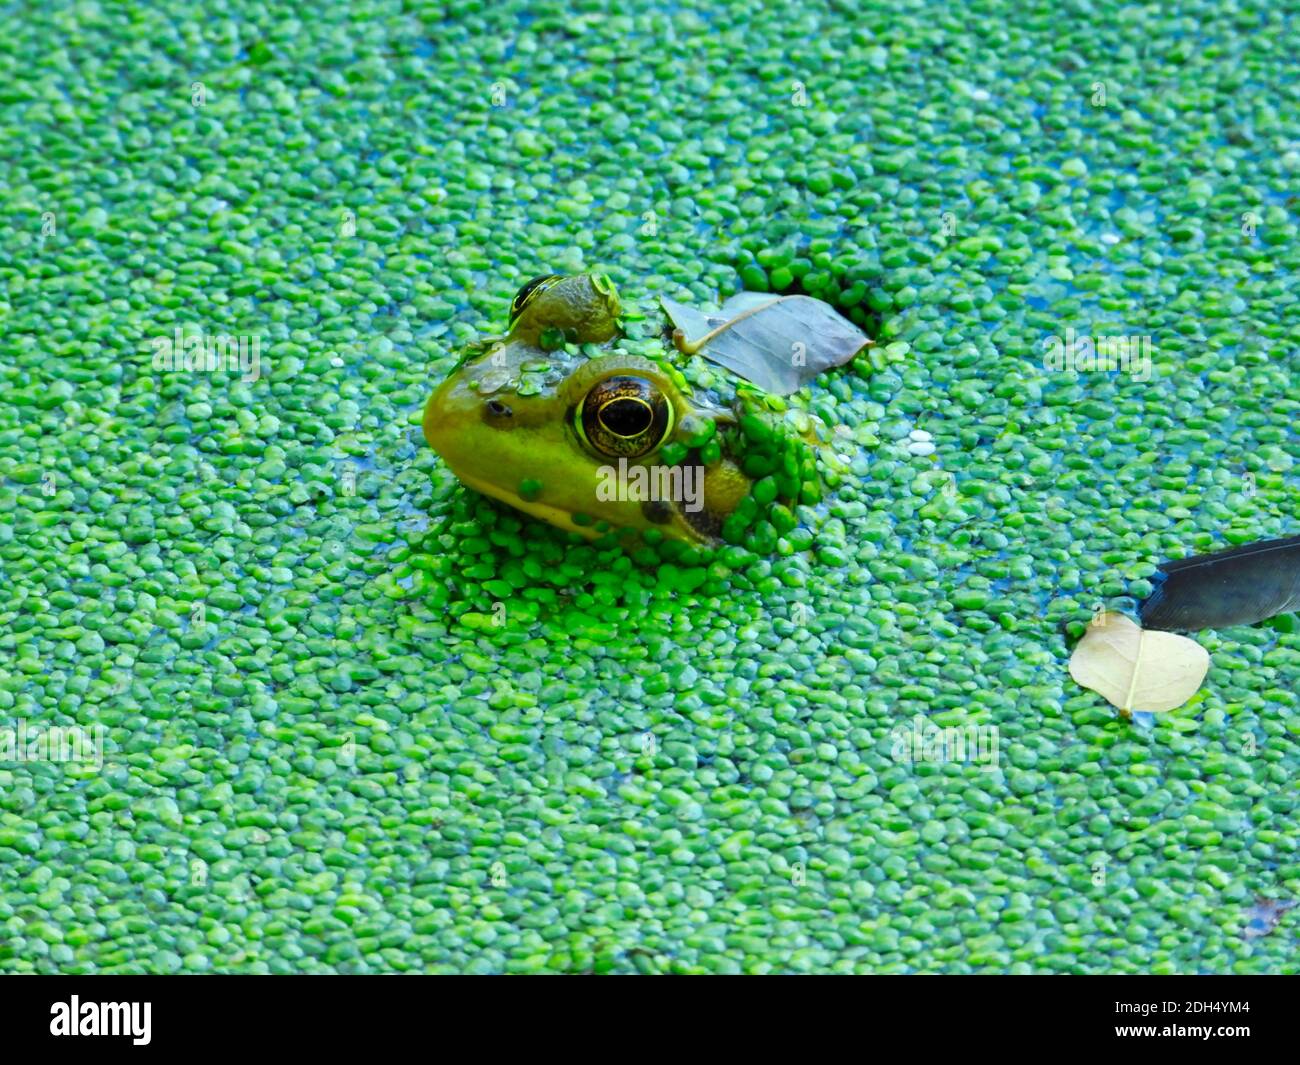 Rana nello stagno: Una rana si siede in acqua con la sua testa compresi gli occhi e le orecchie così come parte della sua schiena visibile, l'acqua coperta da un brigante Foto Stock